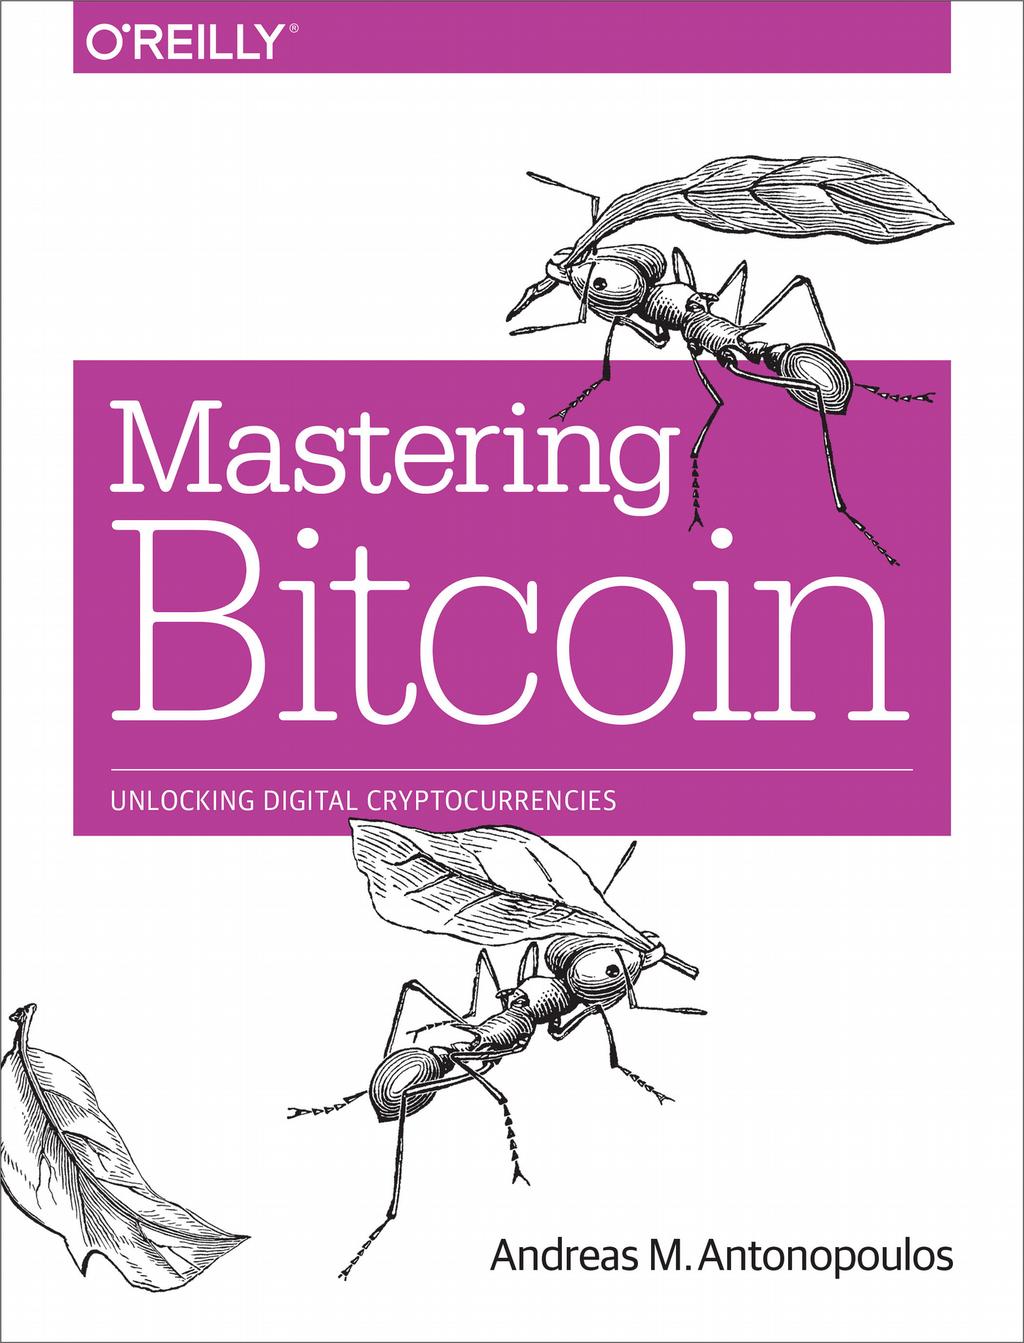 Literatura Strona domowa z linkiem do darmowej wersji w formacie markdown: www.bitcoinbook.